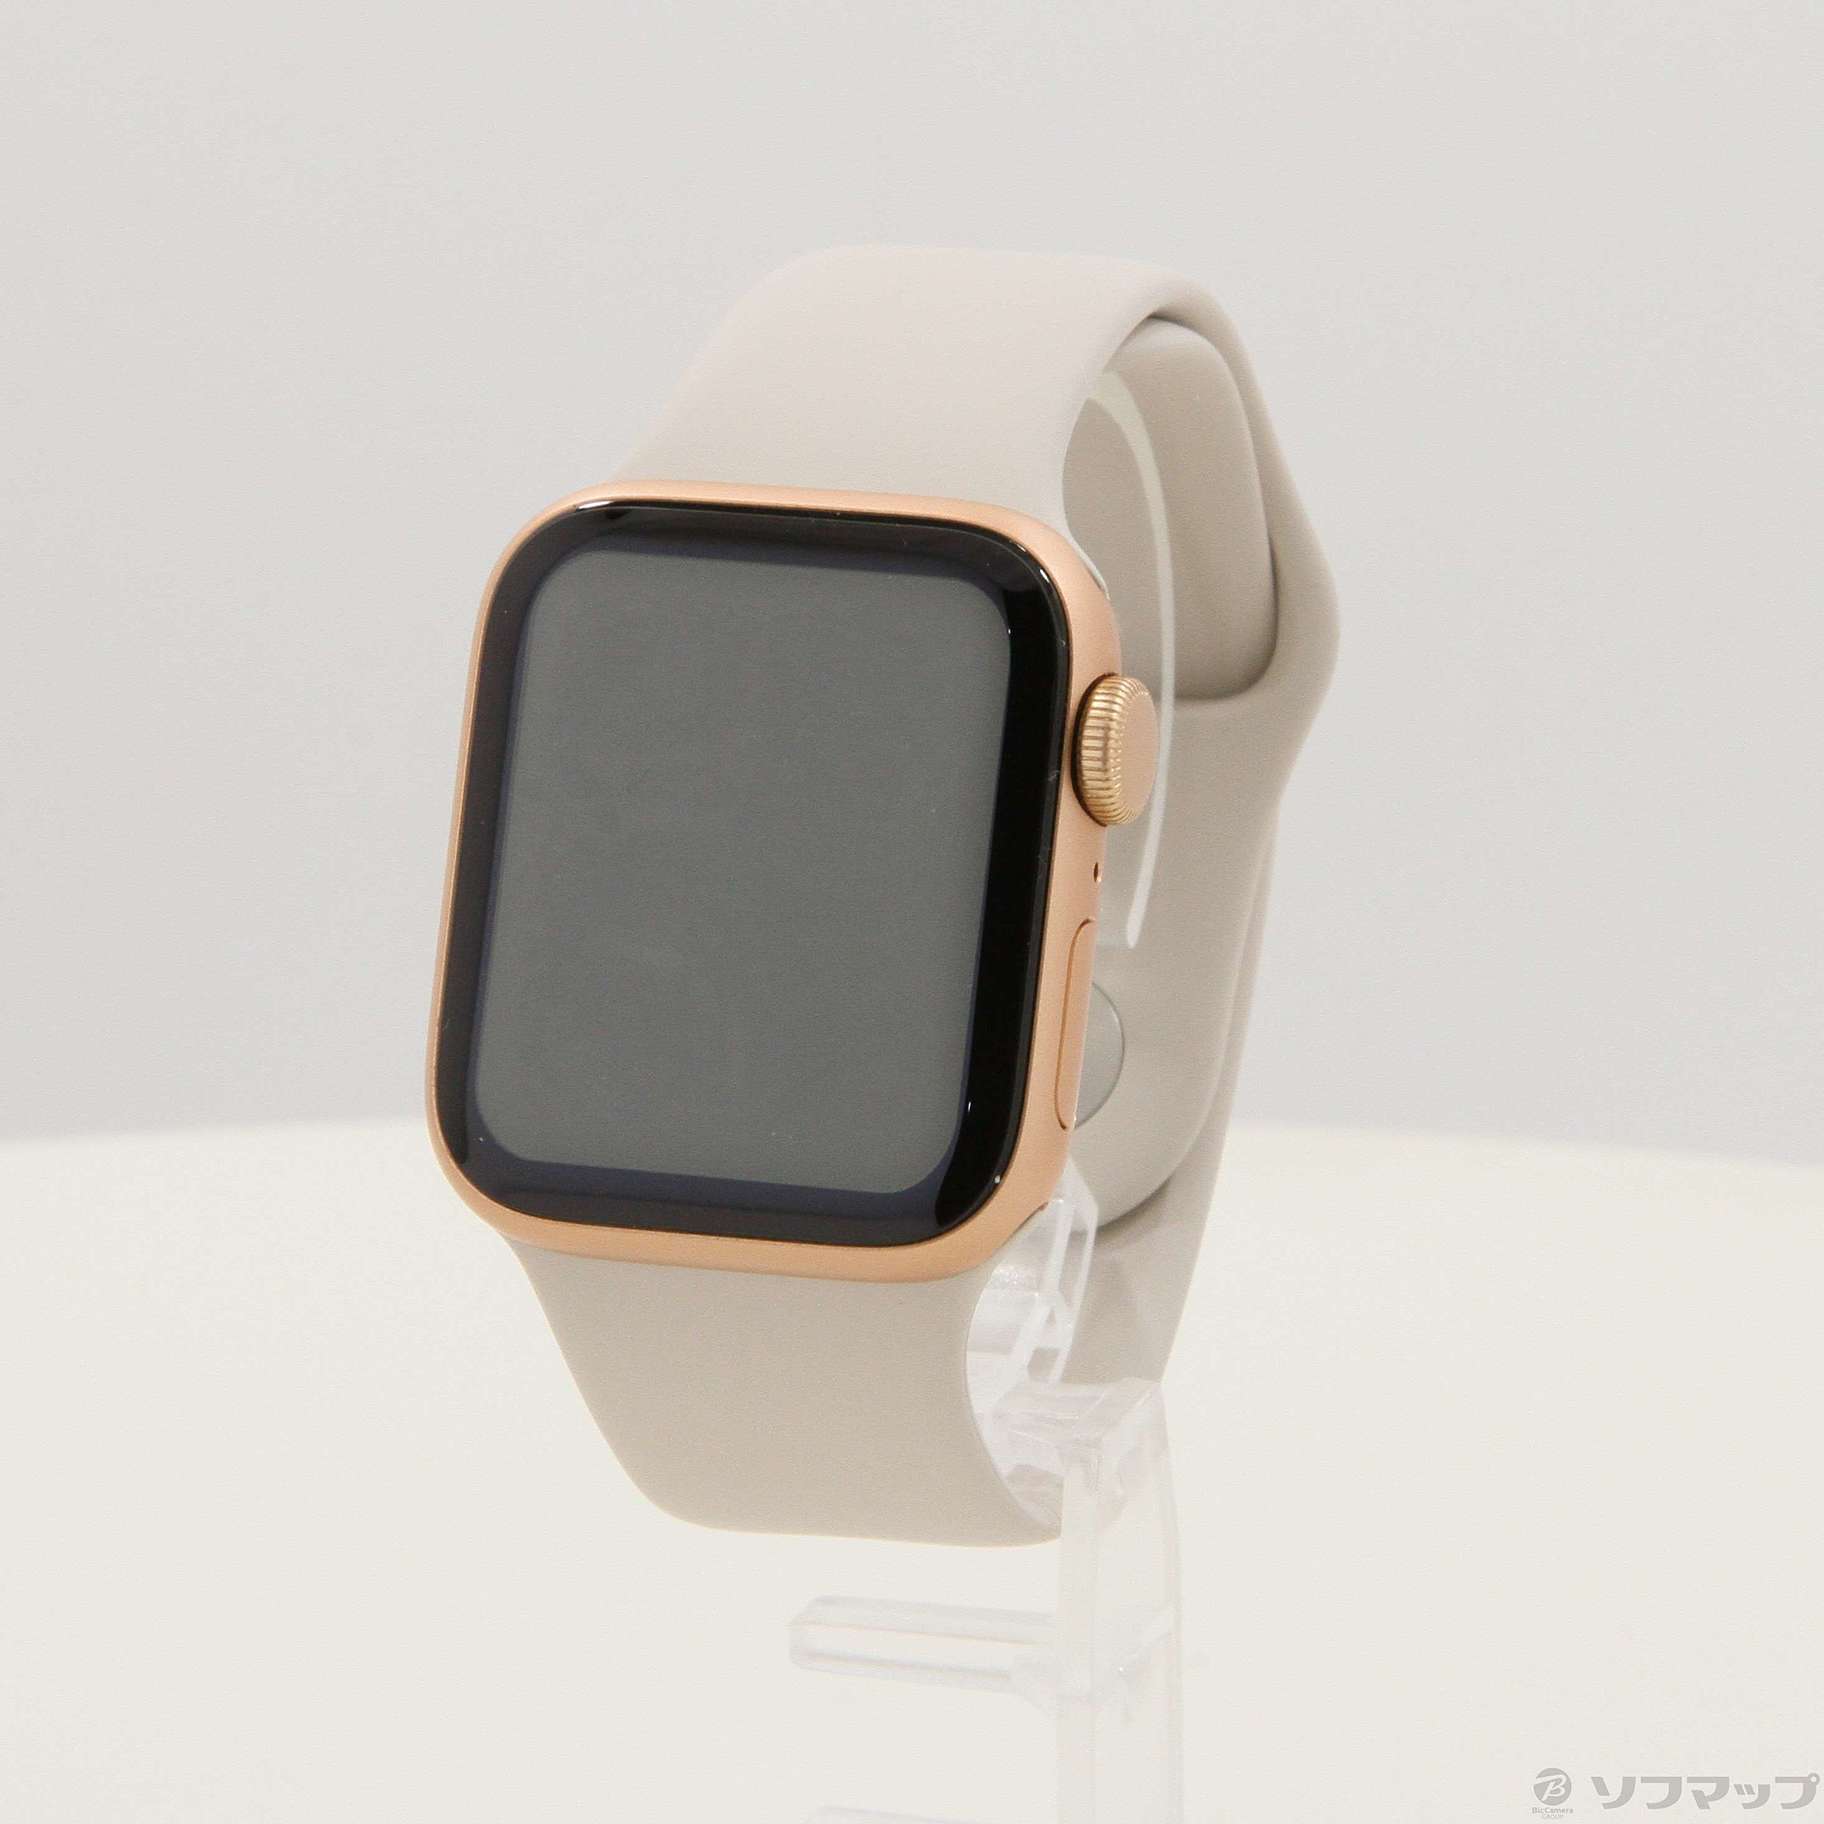 AppleWatchApple Watch SE (GPSモデル) - 40mmゴールドアルミニウム